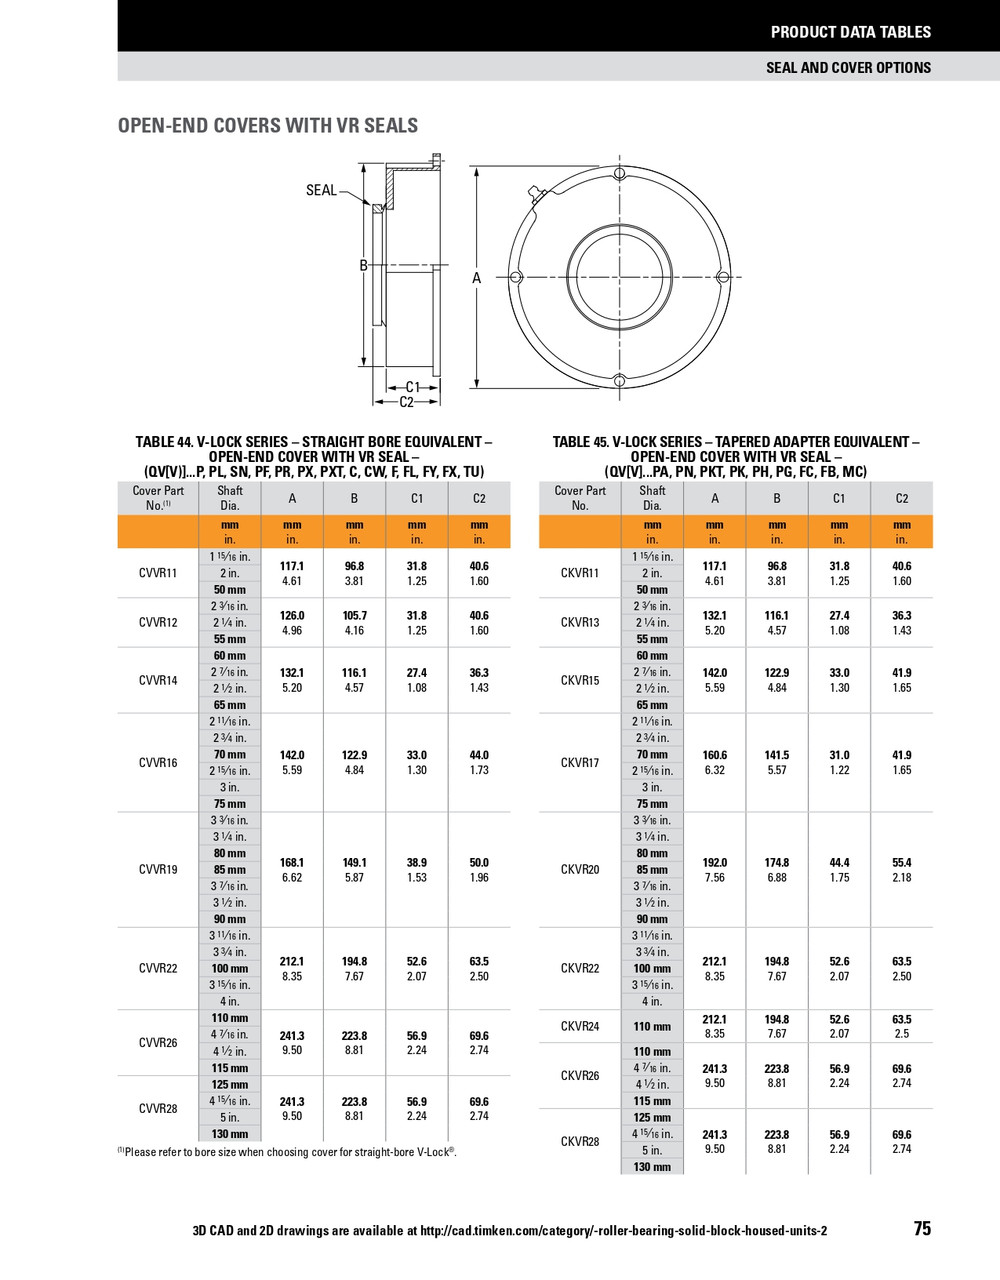 24 Timken SRB Urethane Open End Cover w/V-Ring Nitrile Seal - TA/DV Taper Lock Bushing Type  CKVR24